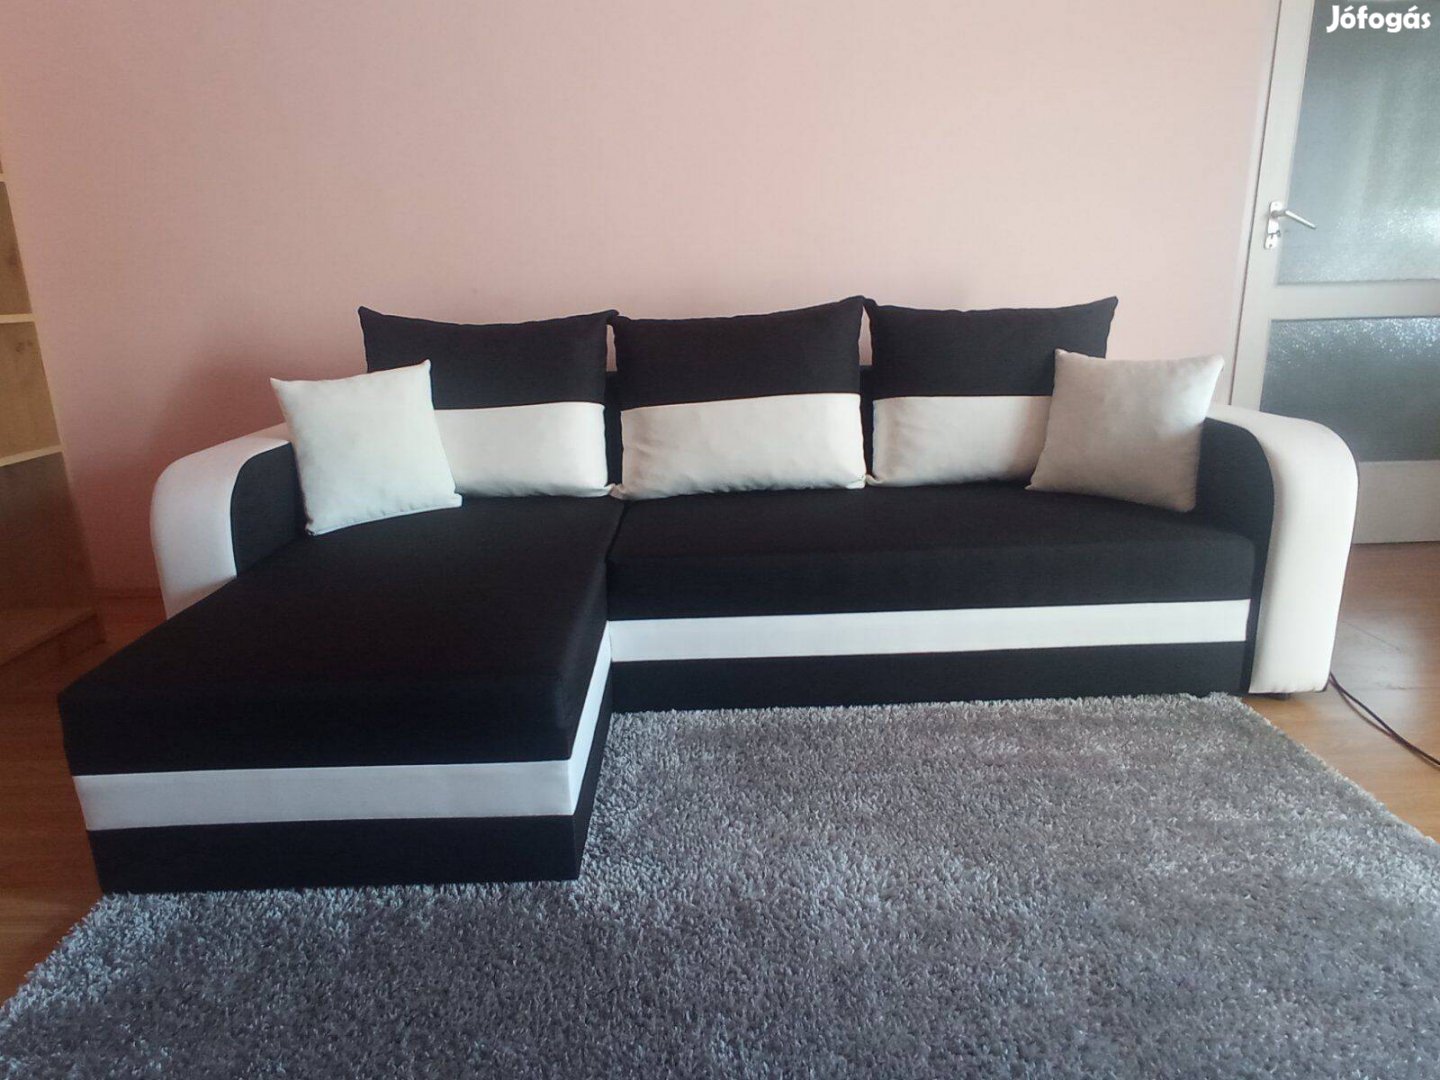 Eladó fekete-fehér színű kanapé